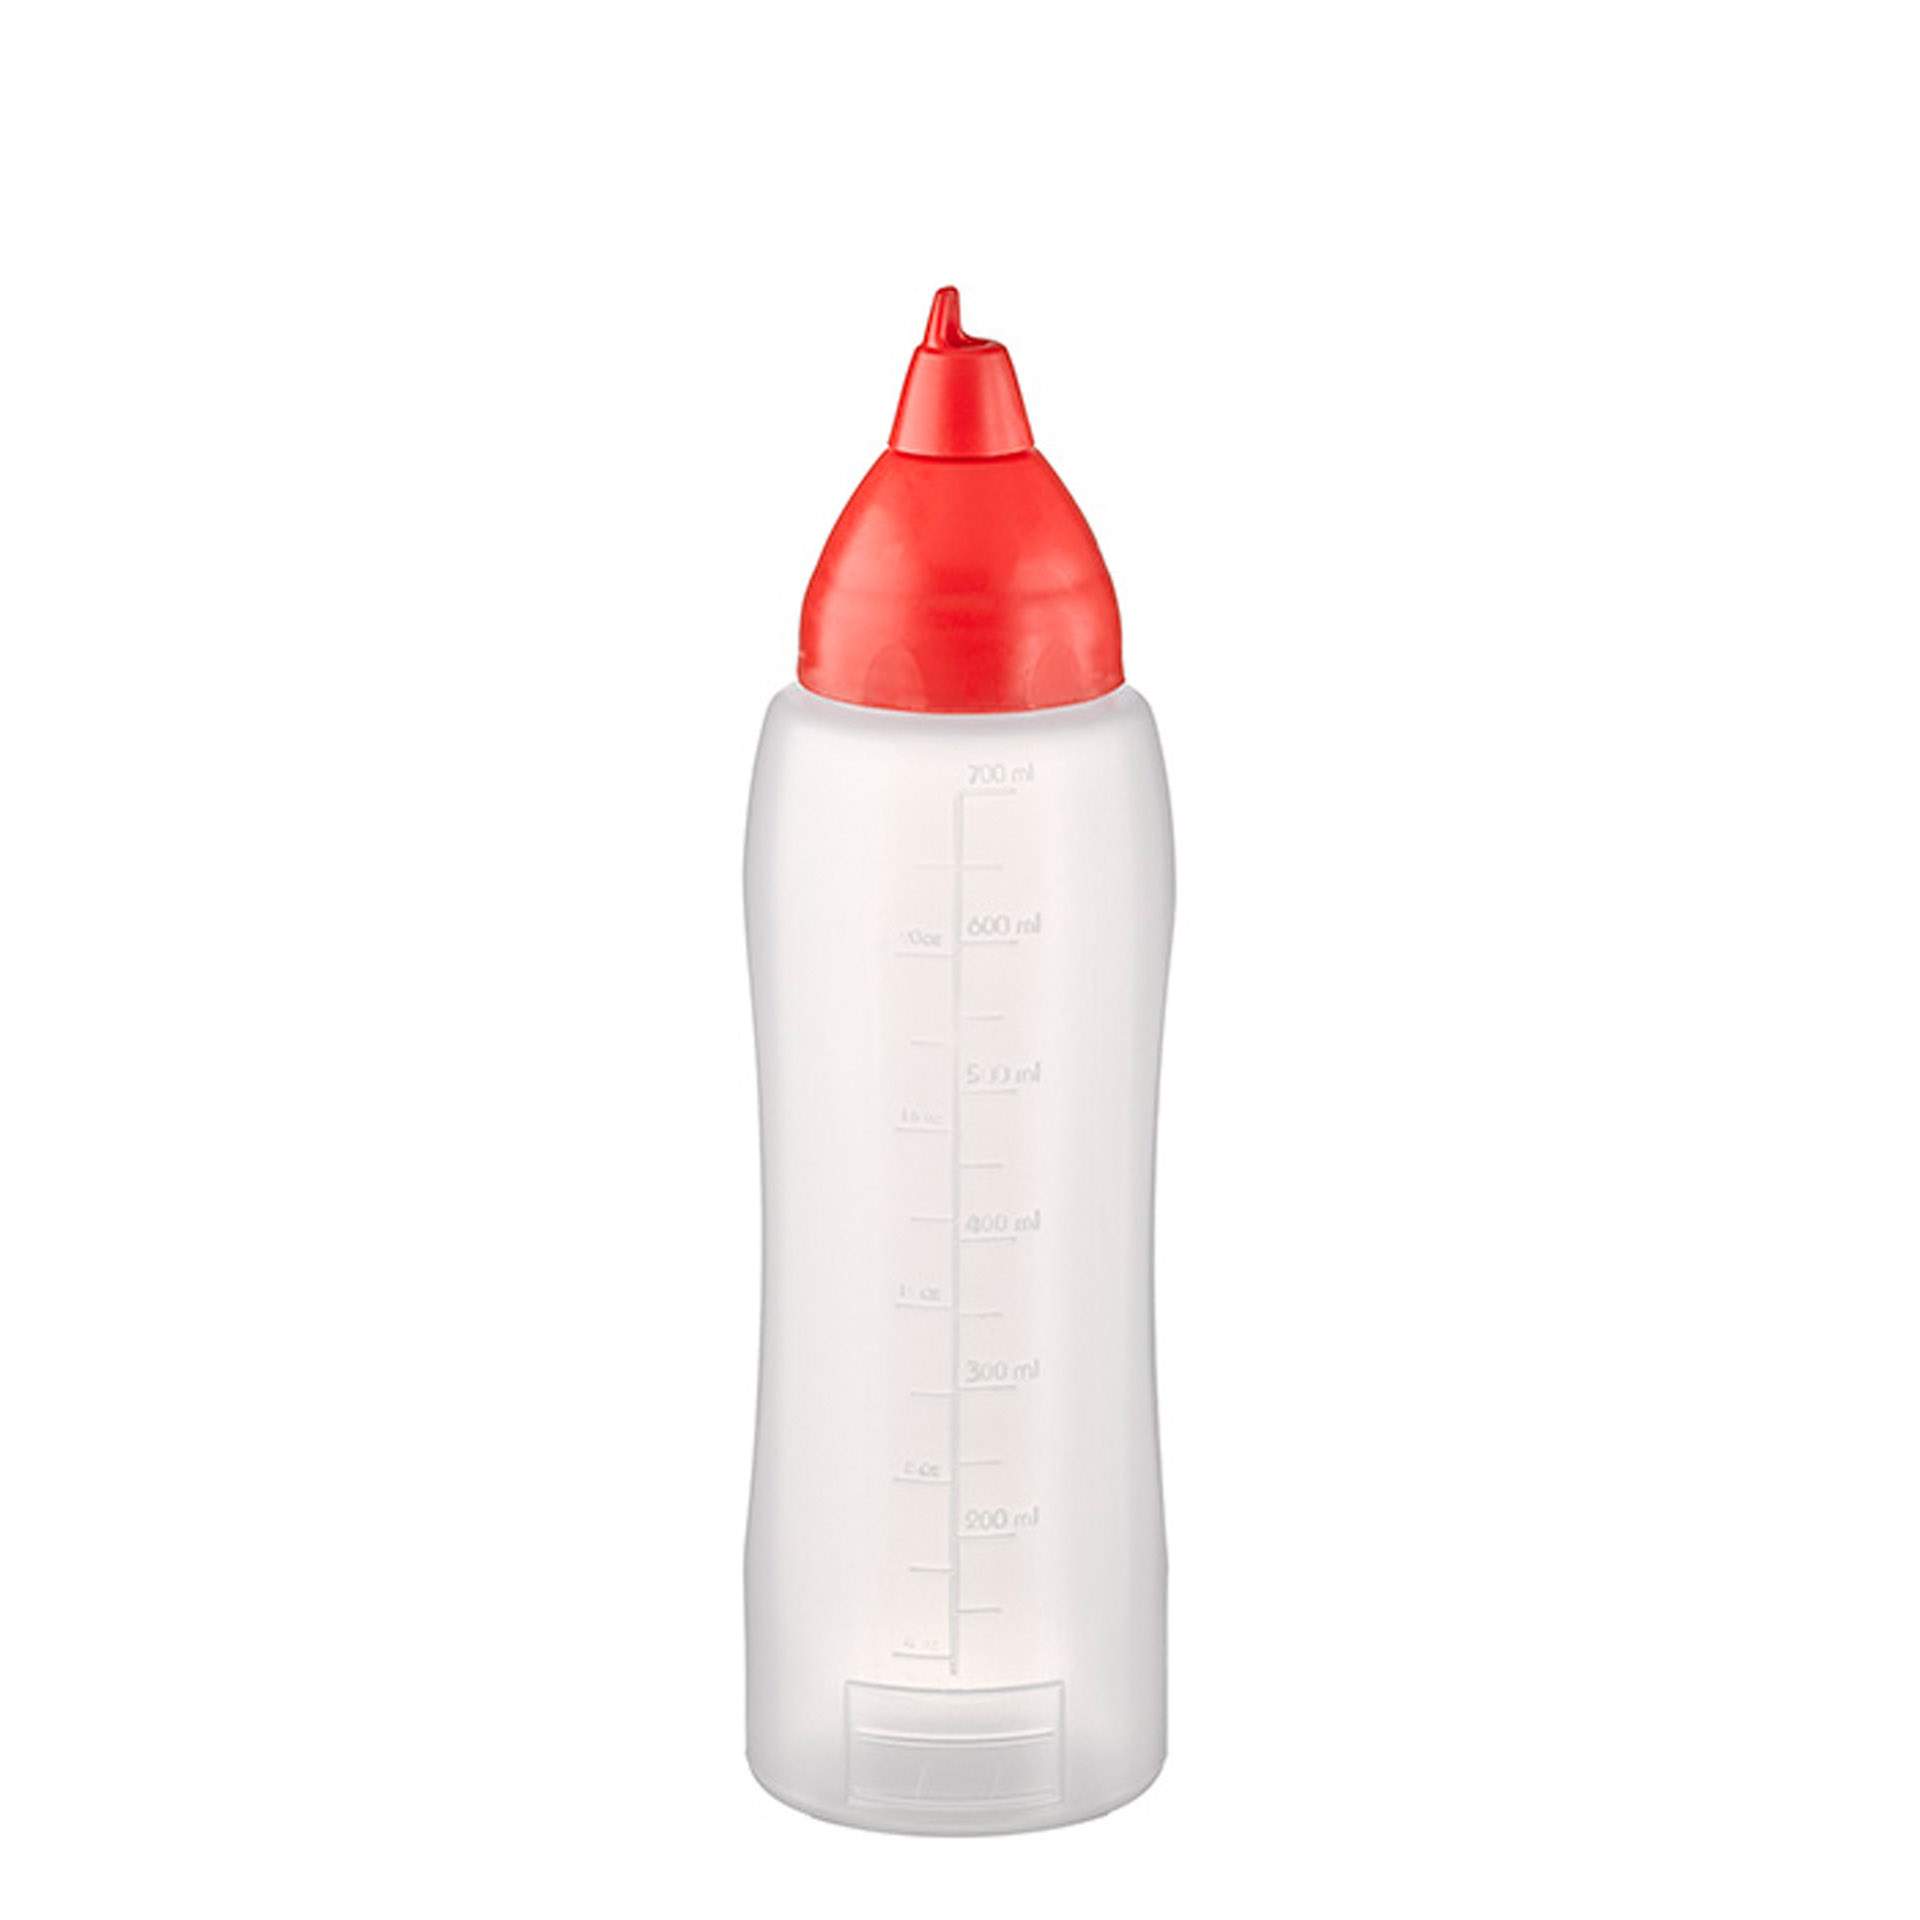 Quetschflasche - mit Schraubdeckel - rot - transparent - Höhe 25,5 cm - Ø 7,0 cm - Inhalt 0,75 l - Polyethylen - 93275-B